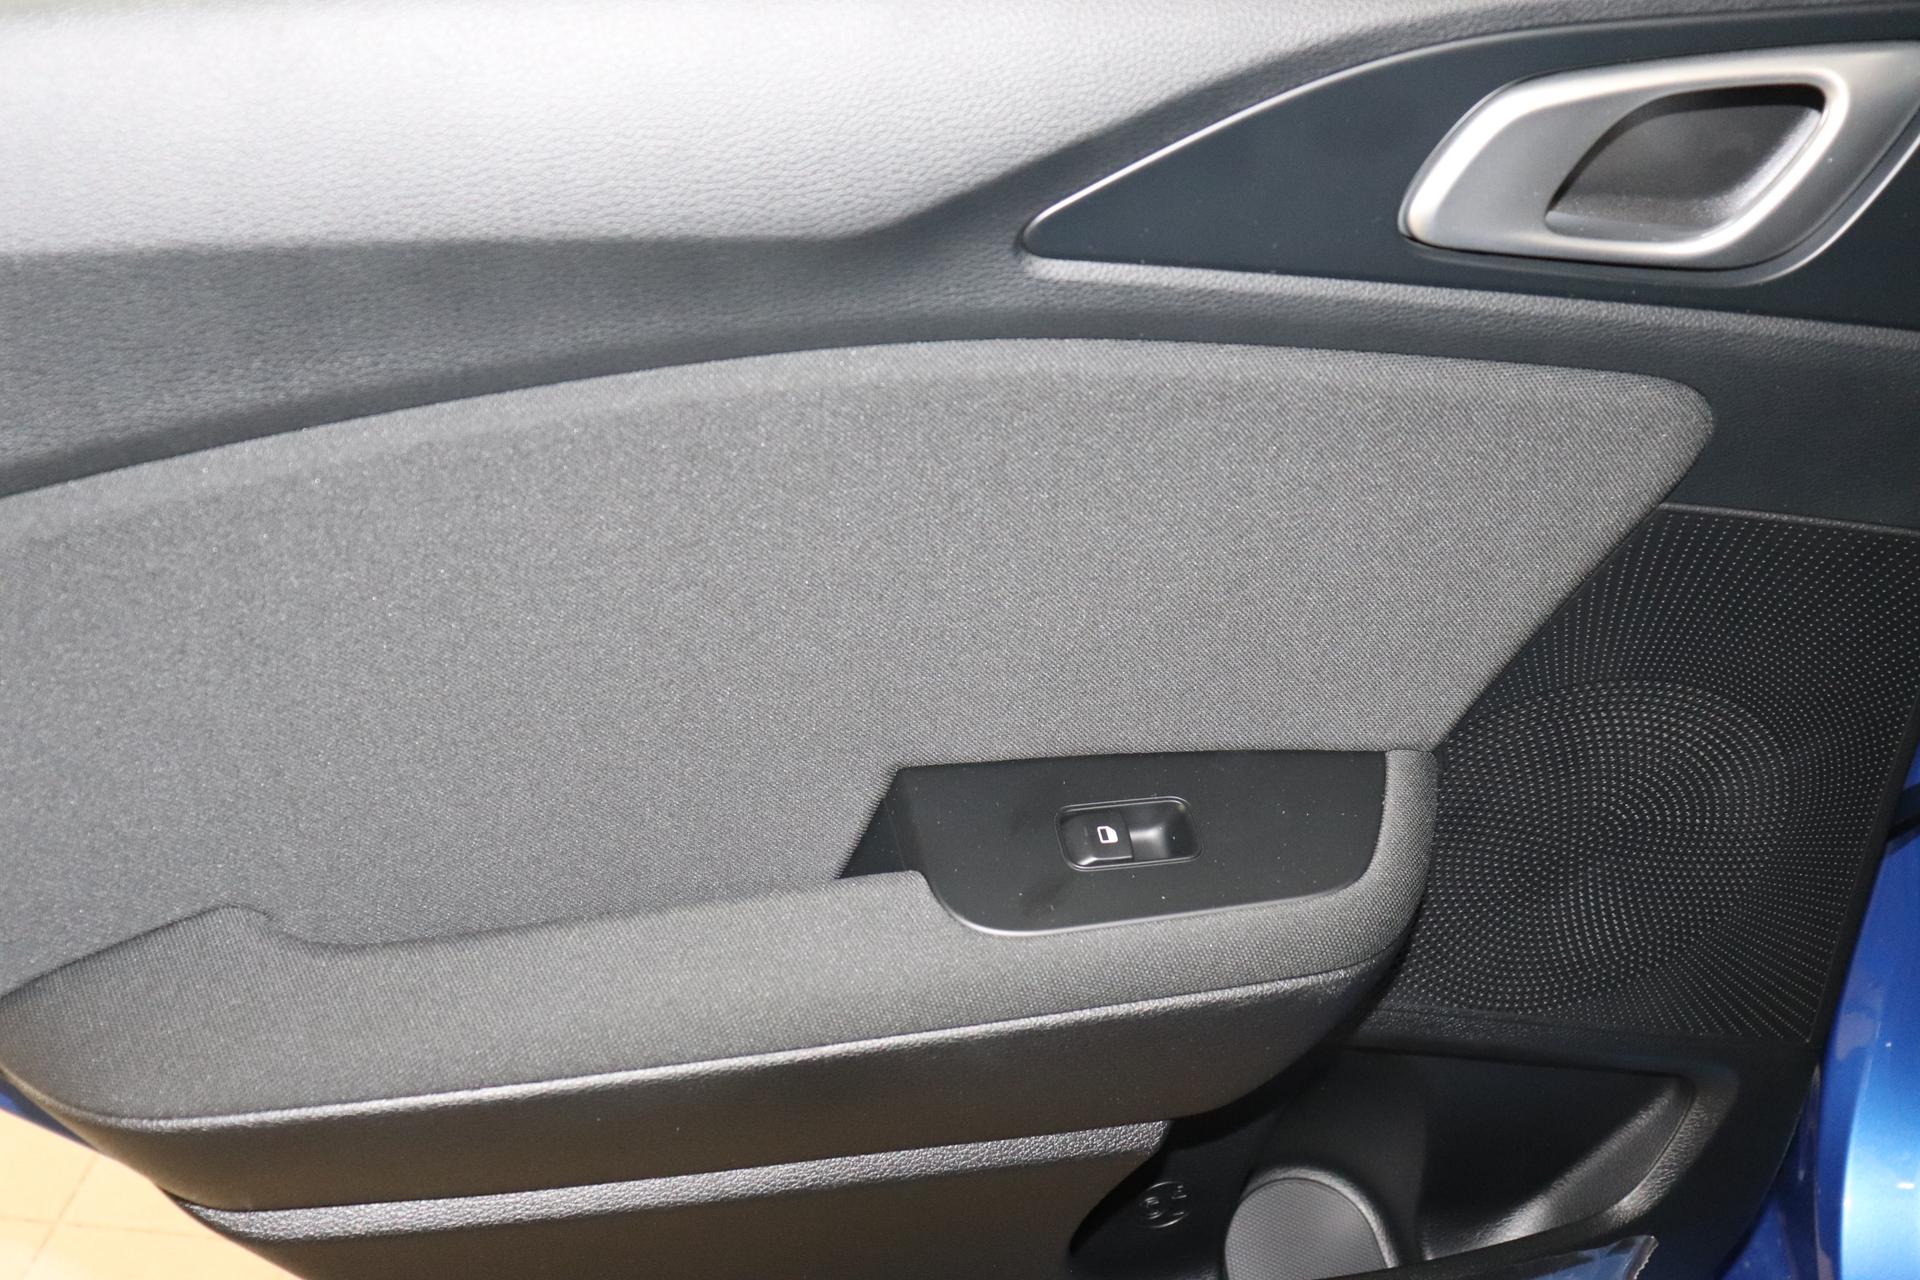 Kia Ceed Sportswagon Silver 1.0 T-GDI 74 kW (101 PS) Klimaanlage, Radio, DAB,  Sitzheizung, Lenkradheizung, Bluetooth, Freisprecheinrichtung, Lichtsensor, Einparkhilfe  hinten, Tempomat, Frontkolisionswarner, Spurfolgeassistent, uvm. günstiger  kaufen